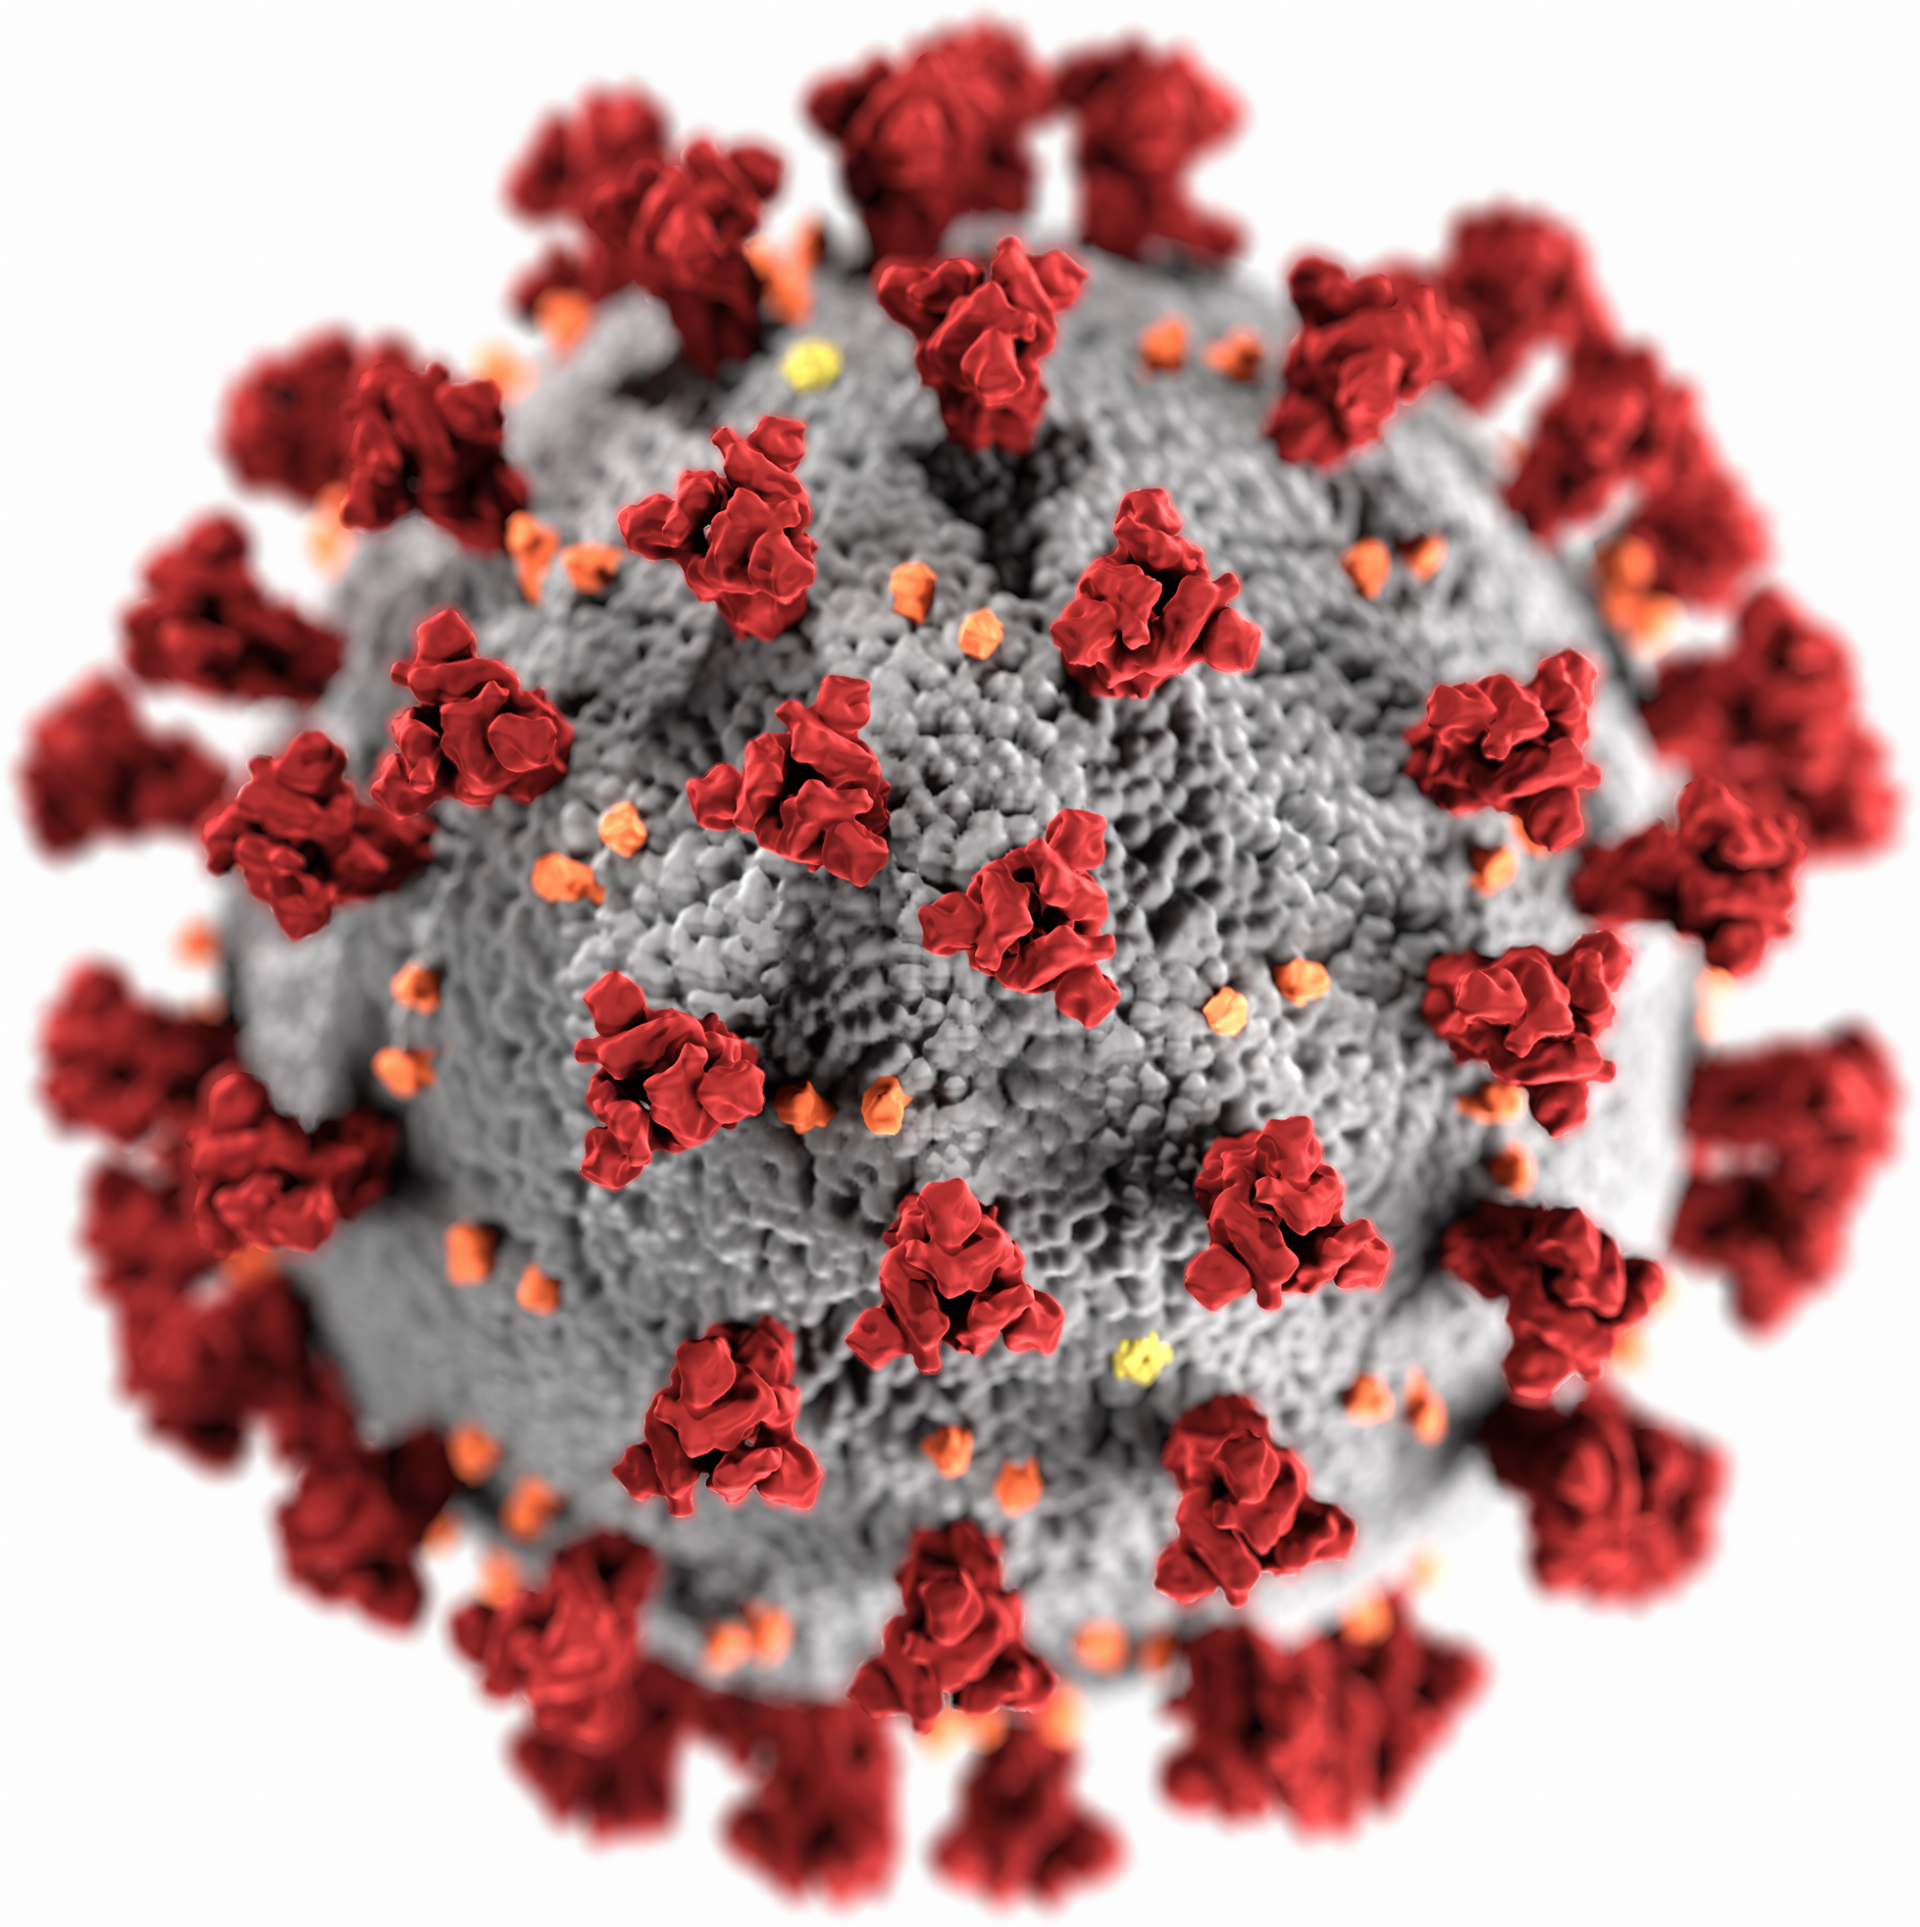 Pandémia vírusu SARS-CoV vypukla v roku 2003. Udáva sa, že epidémia SARS si vyžiadala 774 obetí z 30 krajín. Od roku 2004 nie sú známe nové prípady infekcie týmto typom koronavírusu. Ďalšie vírusové respiračné ochorenie, vyvolané vírusom MERS prvý raz vypuklo v roku 2012 v krajinách Blízkeho Východu. V nasledujúcich rokoch vypukli ďalšie, menšie epidémie. Uvádza sa, že celkovo usmrtil 842 pacientov. 